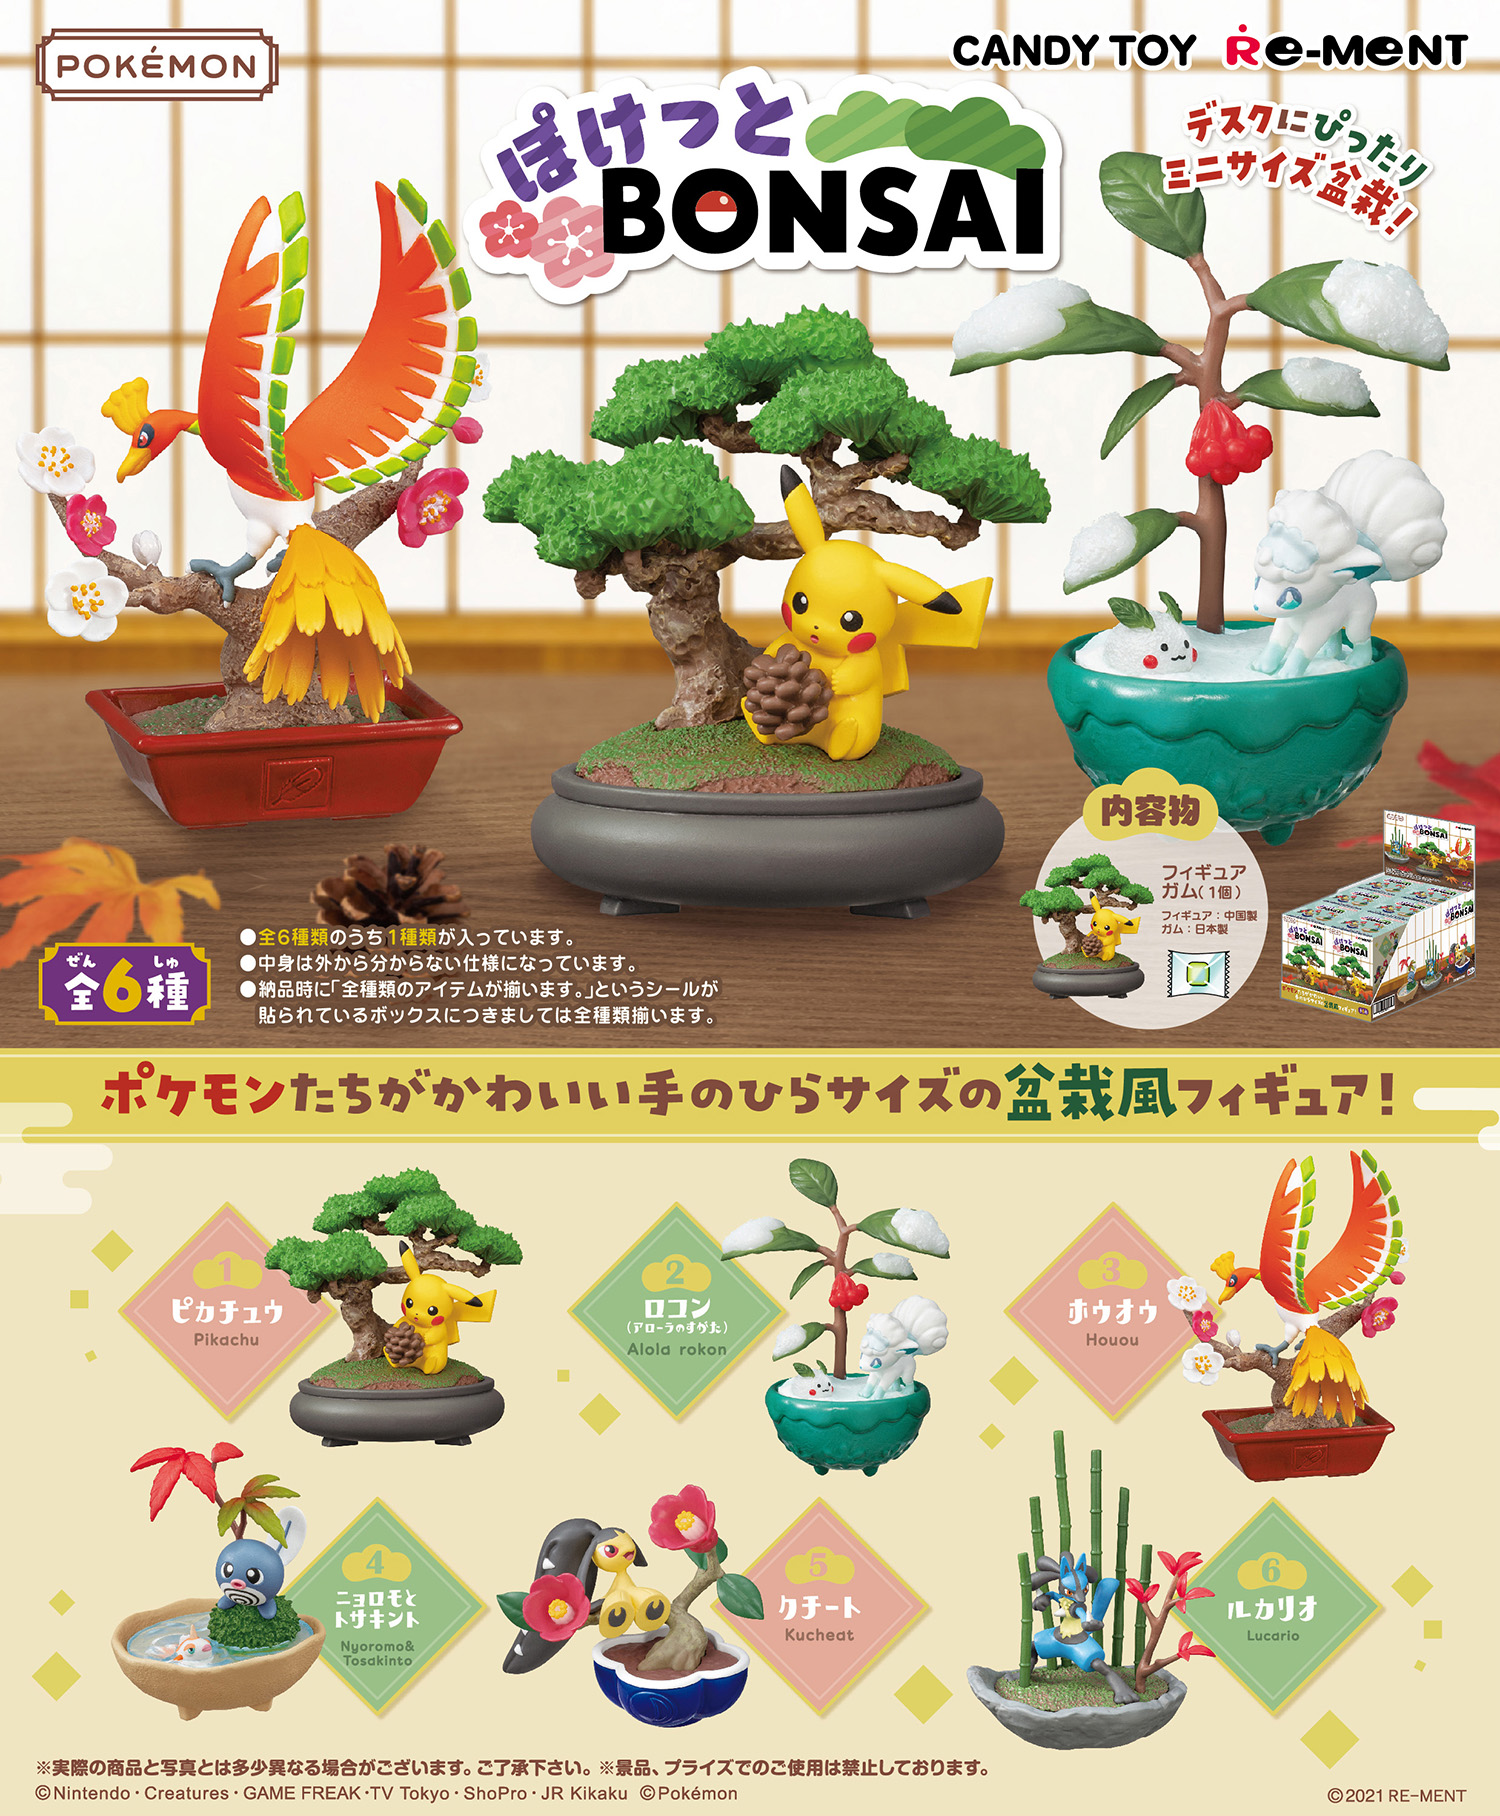 盆栽とポケモンによる和風な世界観を表現 ポケットモンスター ぽけっとbonsai が8月7日に発売決定 Hobby Watch